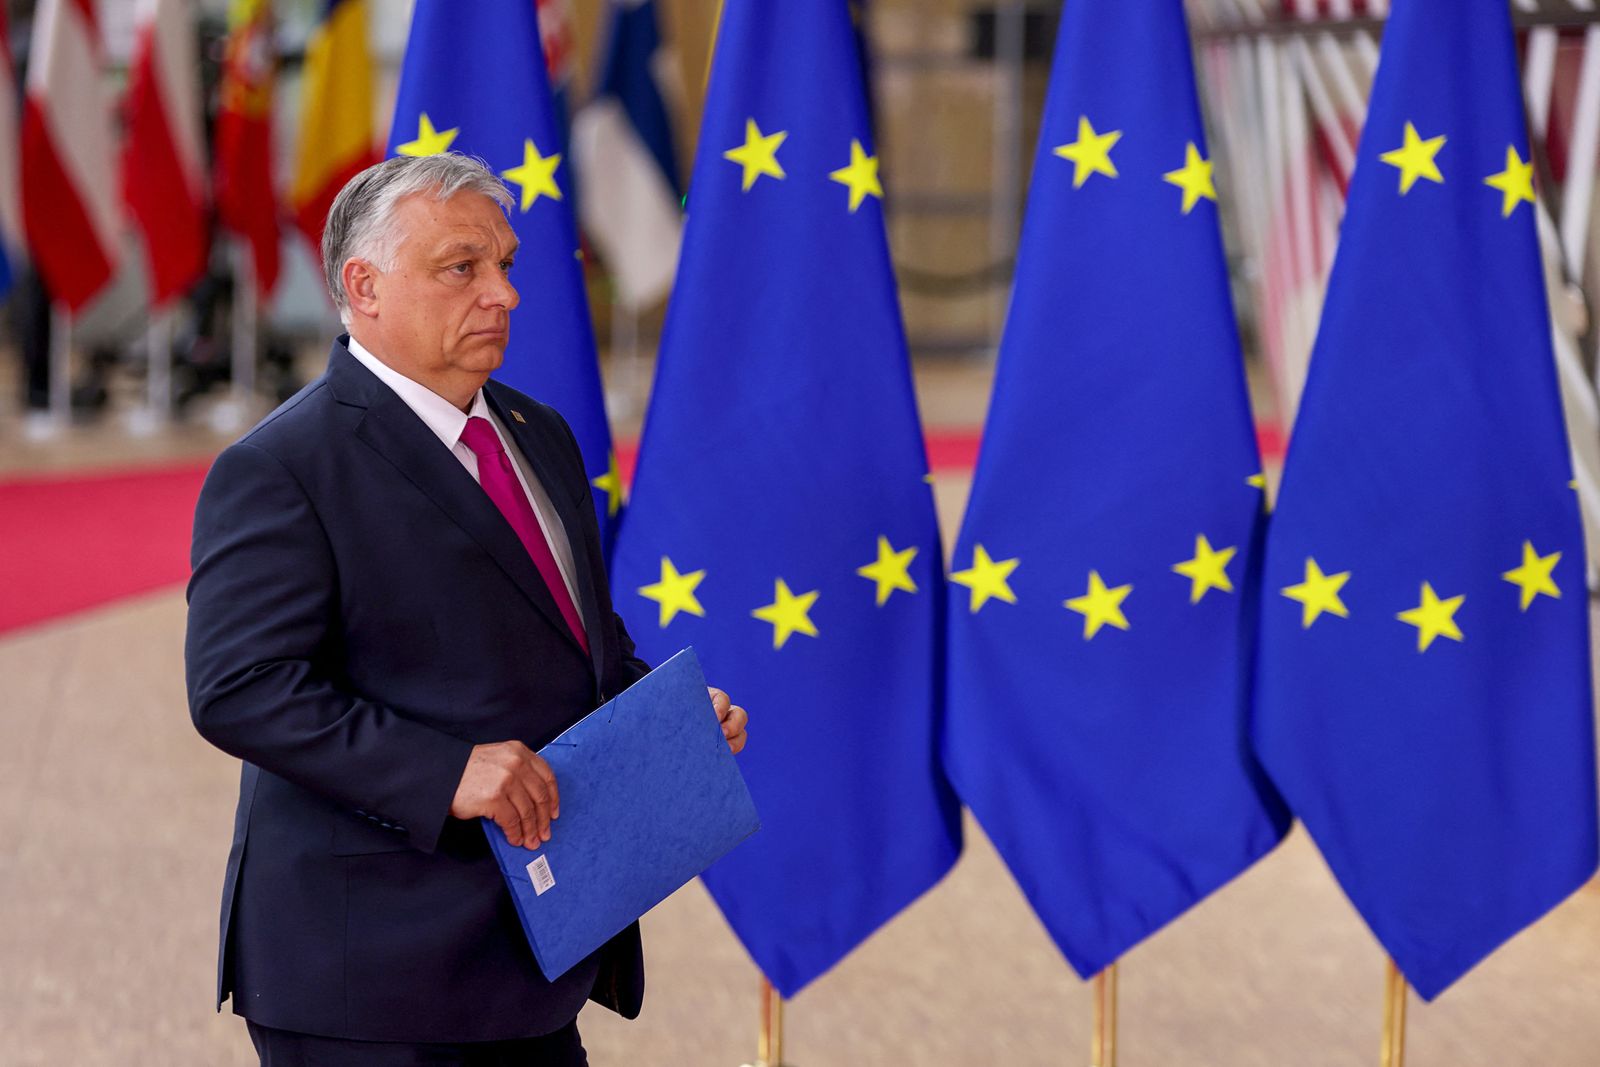 رئيس الوزراء المجري فيكتور أوربان عند وصوله إلى قمة الاتحاد الأوروبي في بروكسيل - 30 مايو 2022 - REUTERS